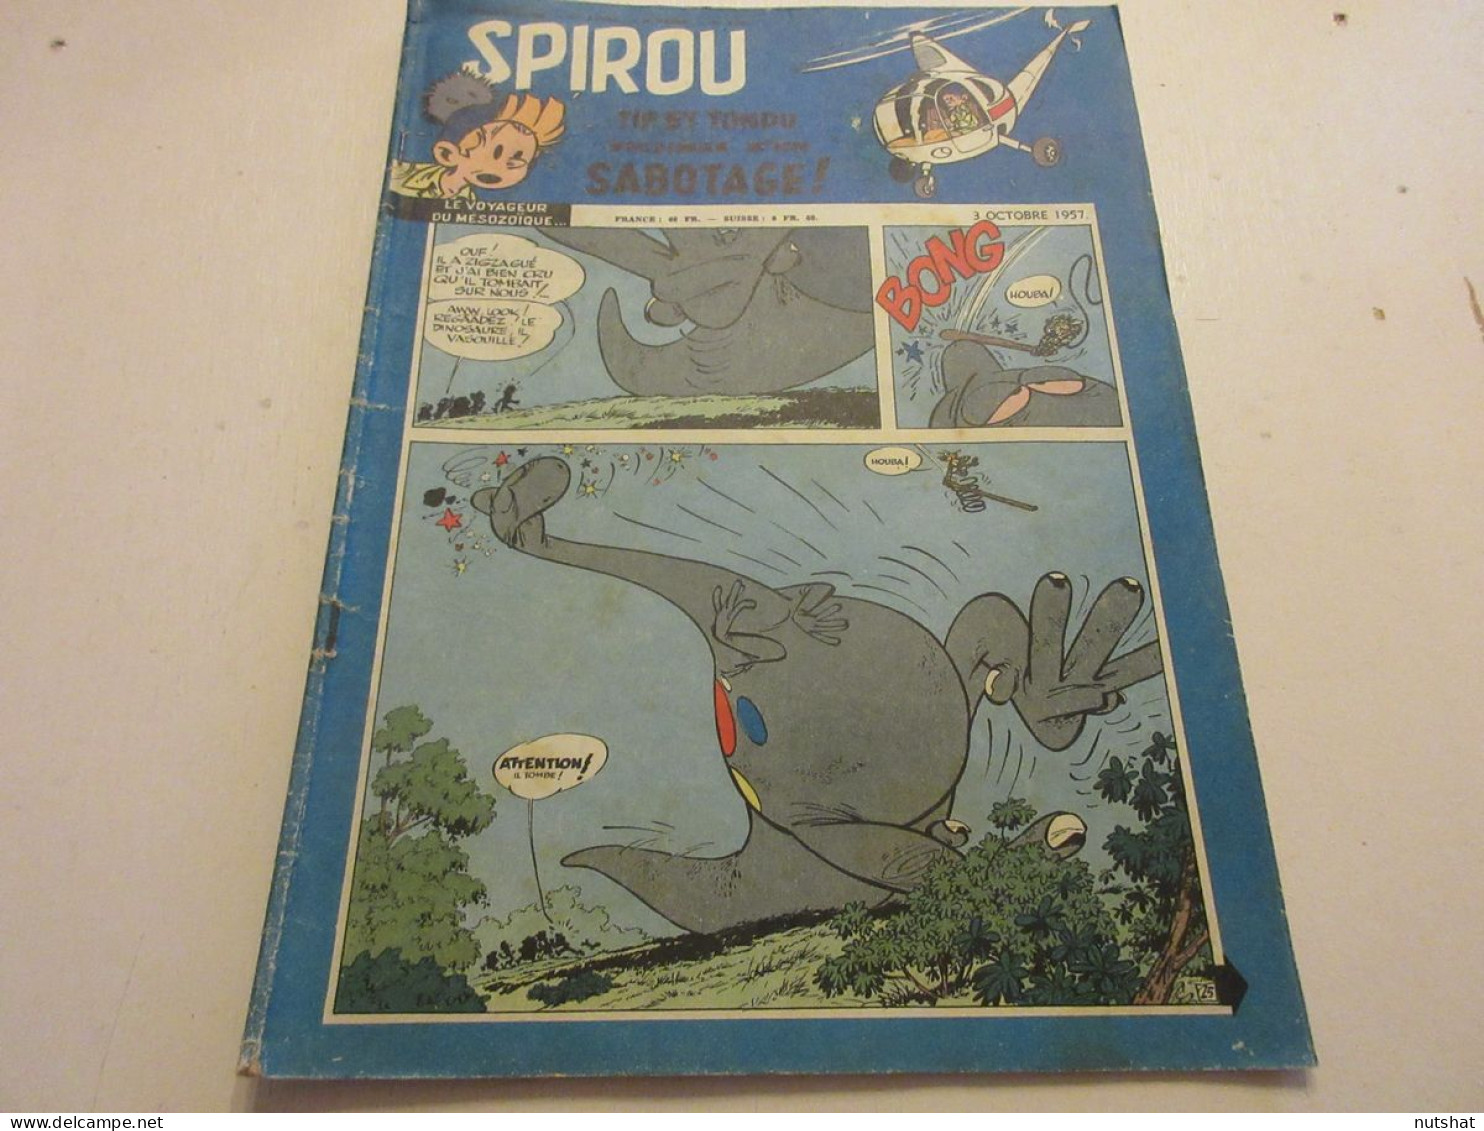 SPIROU 1016 03.10.1957 Les ROBOTS Albert DUCROCQ VELO RENTREE De Fausto COPPI    - Spirou Magazine